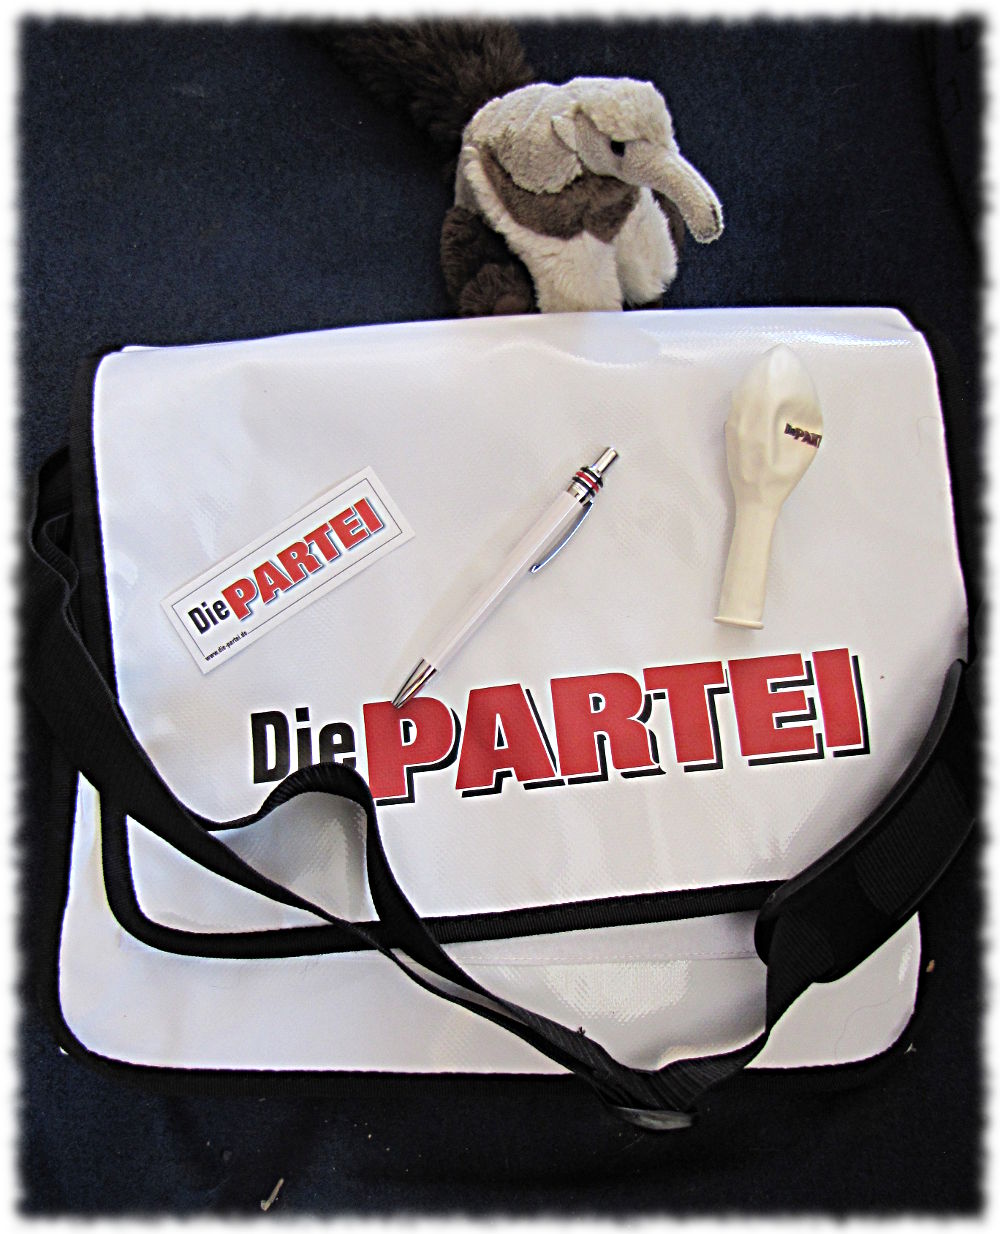 Tasche mit Logo der PARTEI, Aufkleber, Kugelschreiber, Luftballon und einem nicht dazugehörenden Stoffameisenbär.